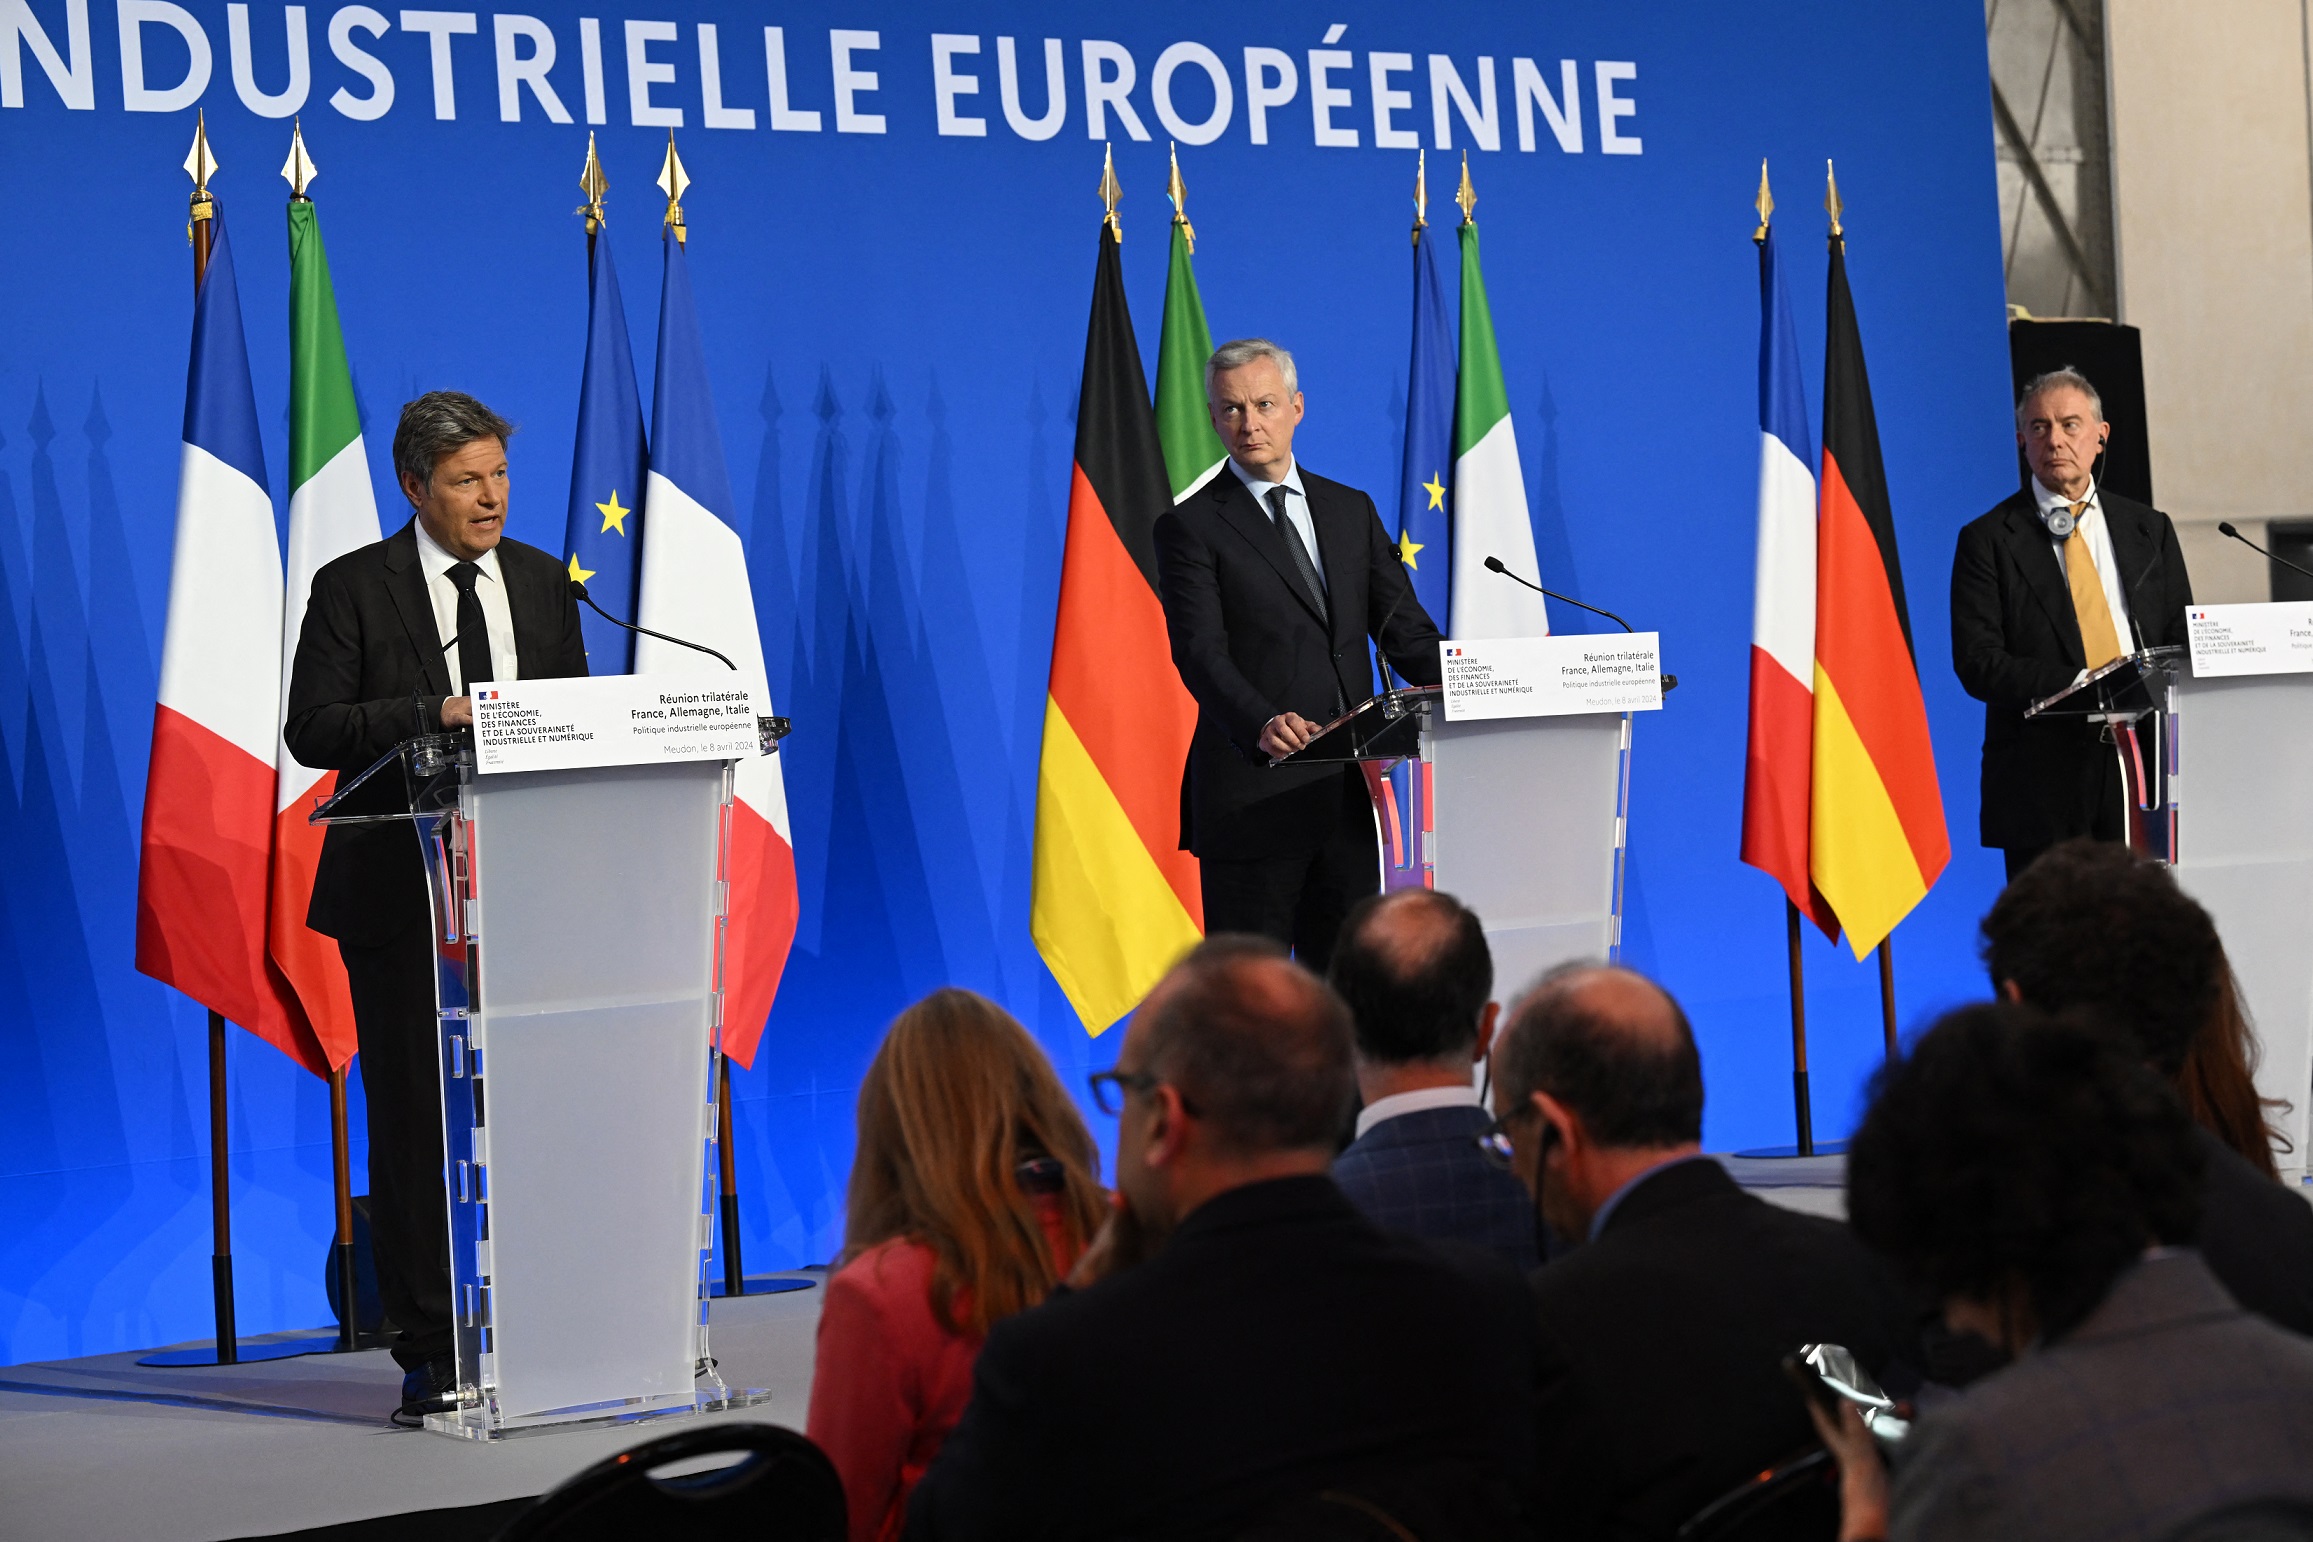 Industrie : l’Allemagne, l’Italie et la France plaident pour un choc de simplification en Europe